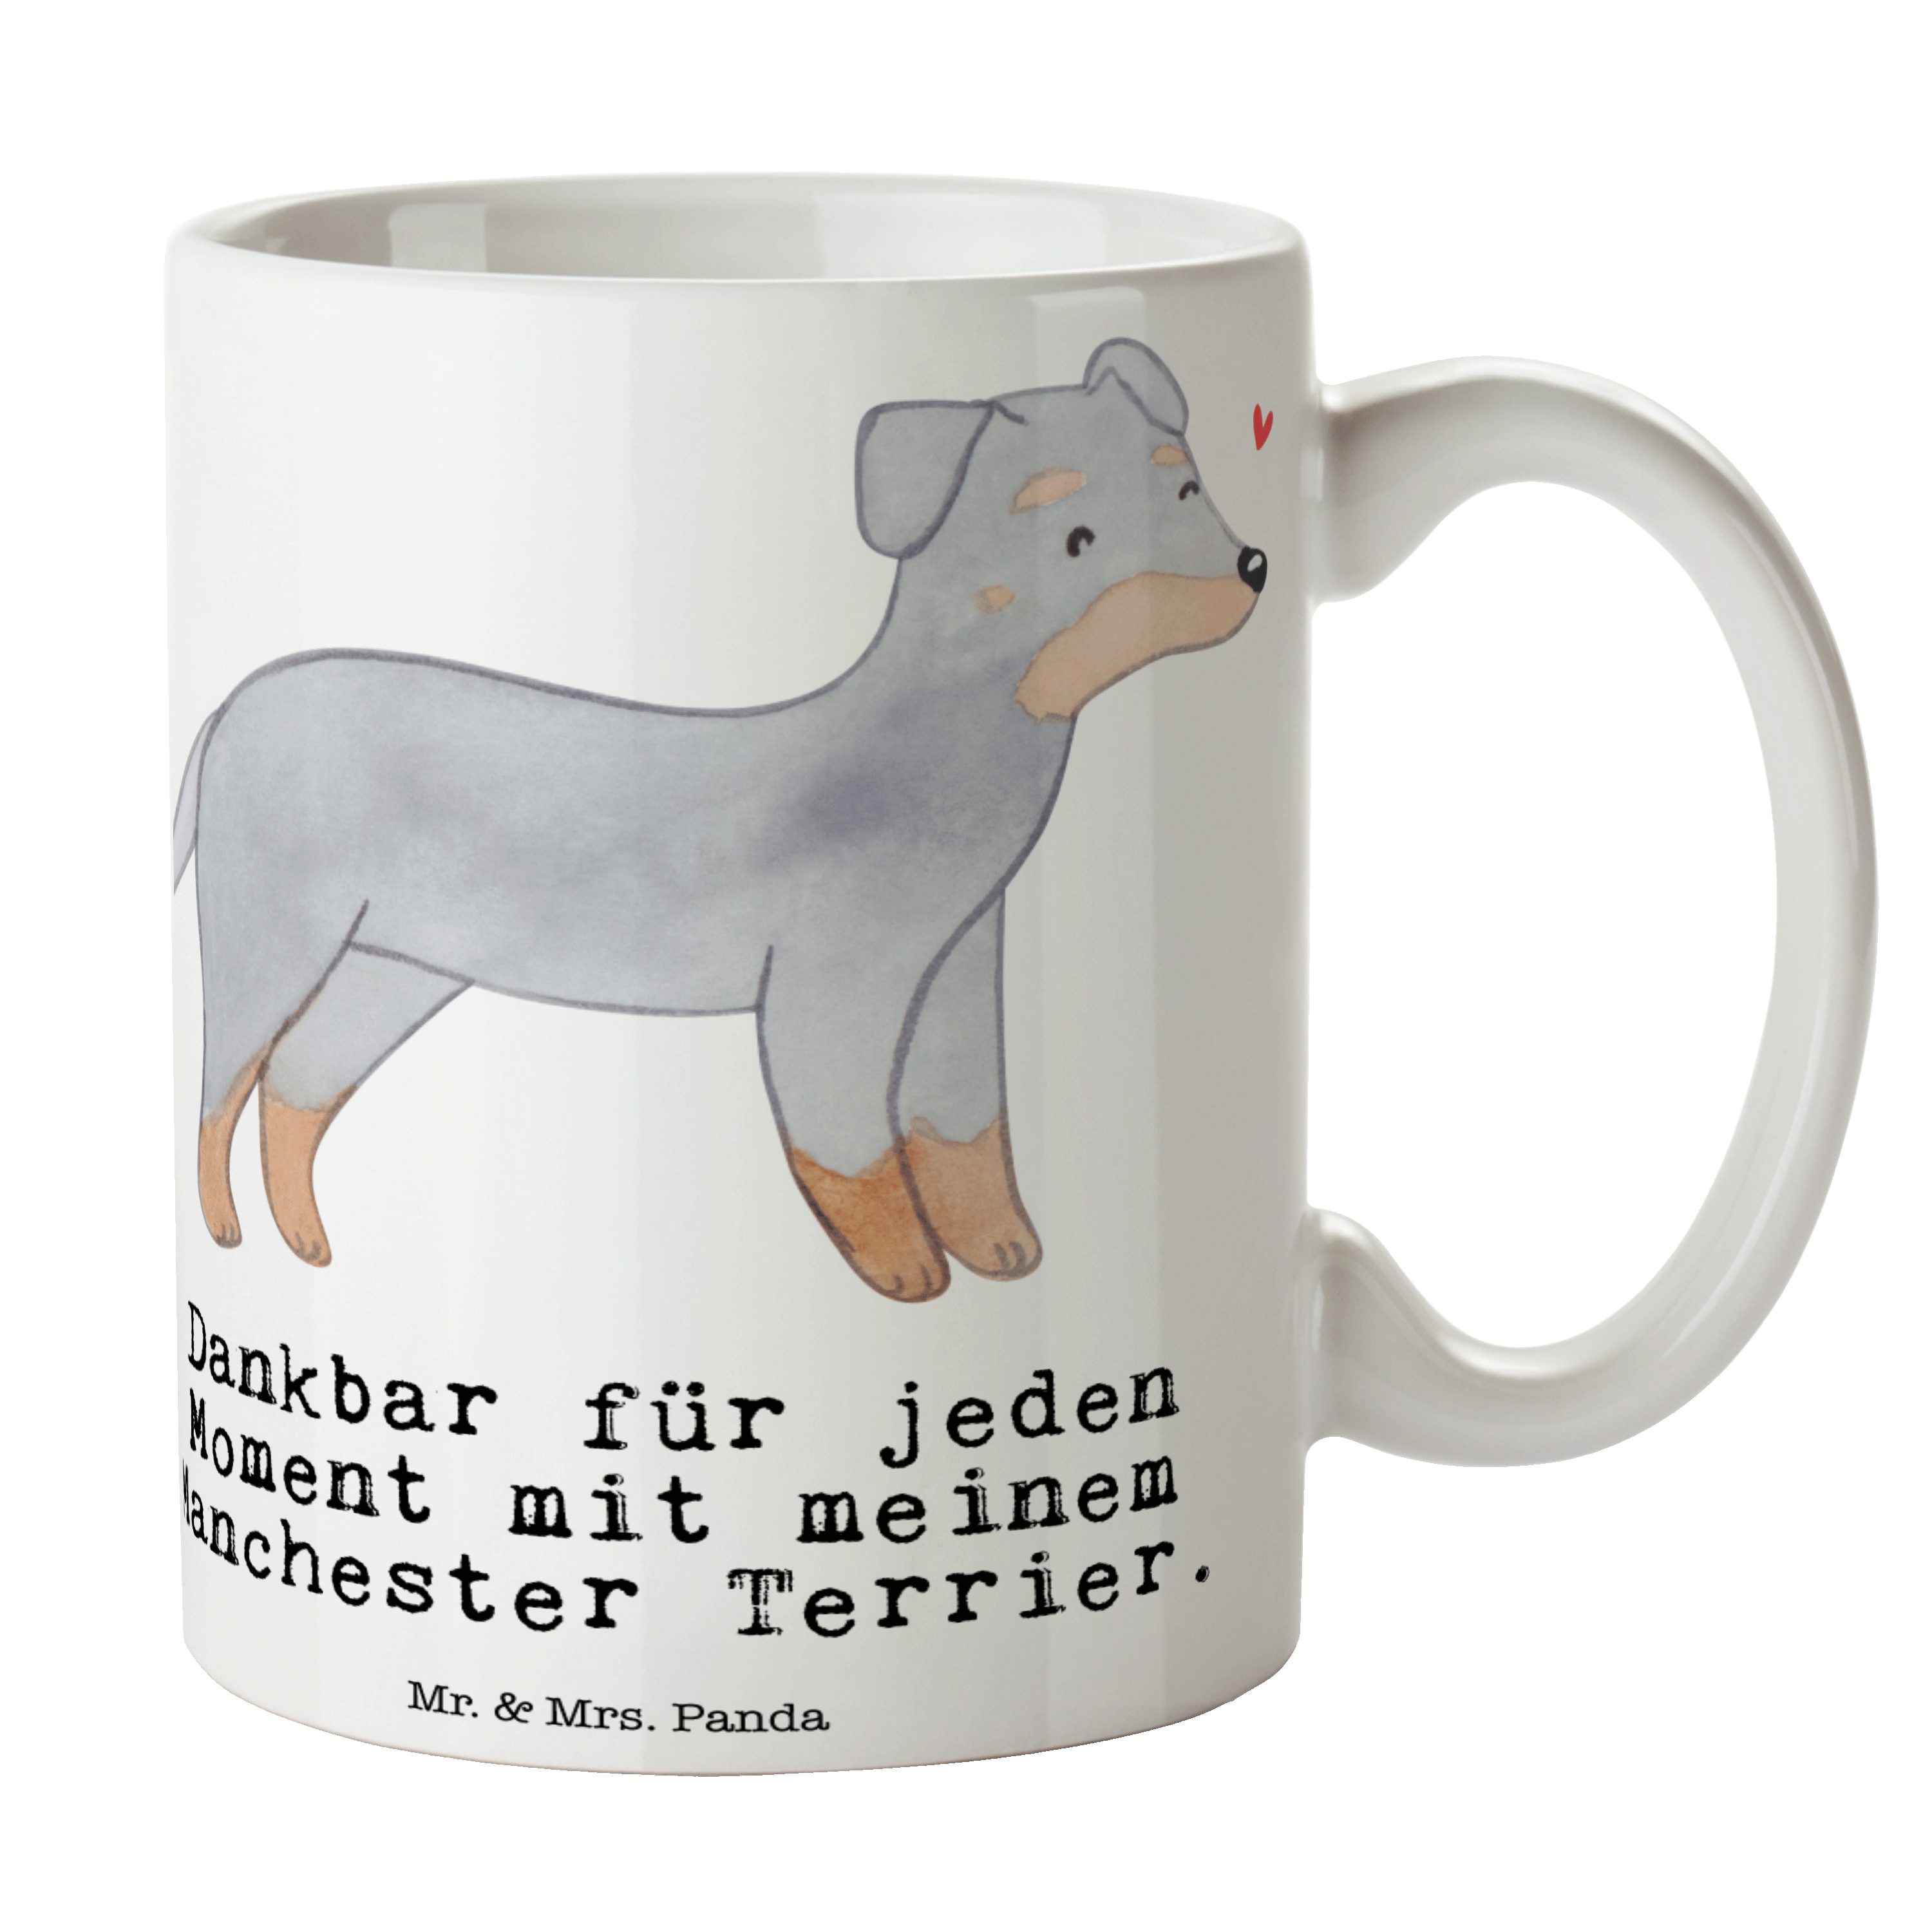 Mr. & Mrs. Panda Tasse Manchester Terrier Moment - Weiß - Geschenk, Tasse, Geschenk Tasse, T, Keramik